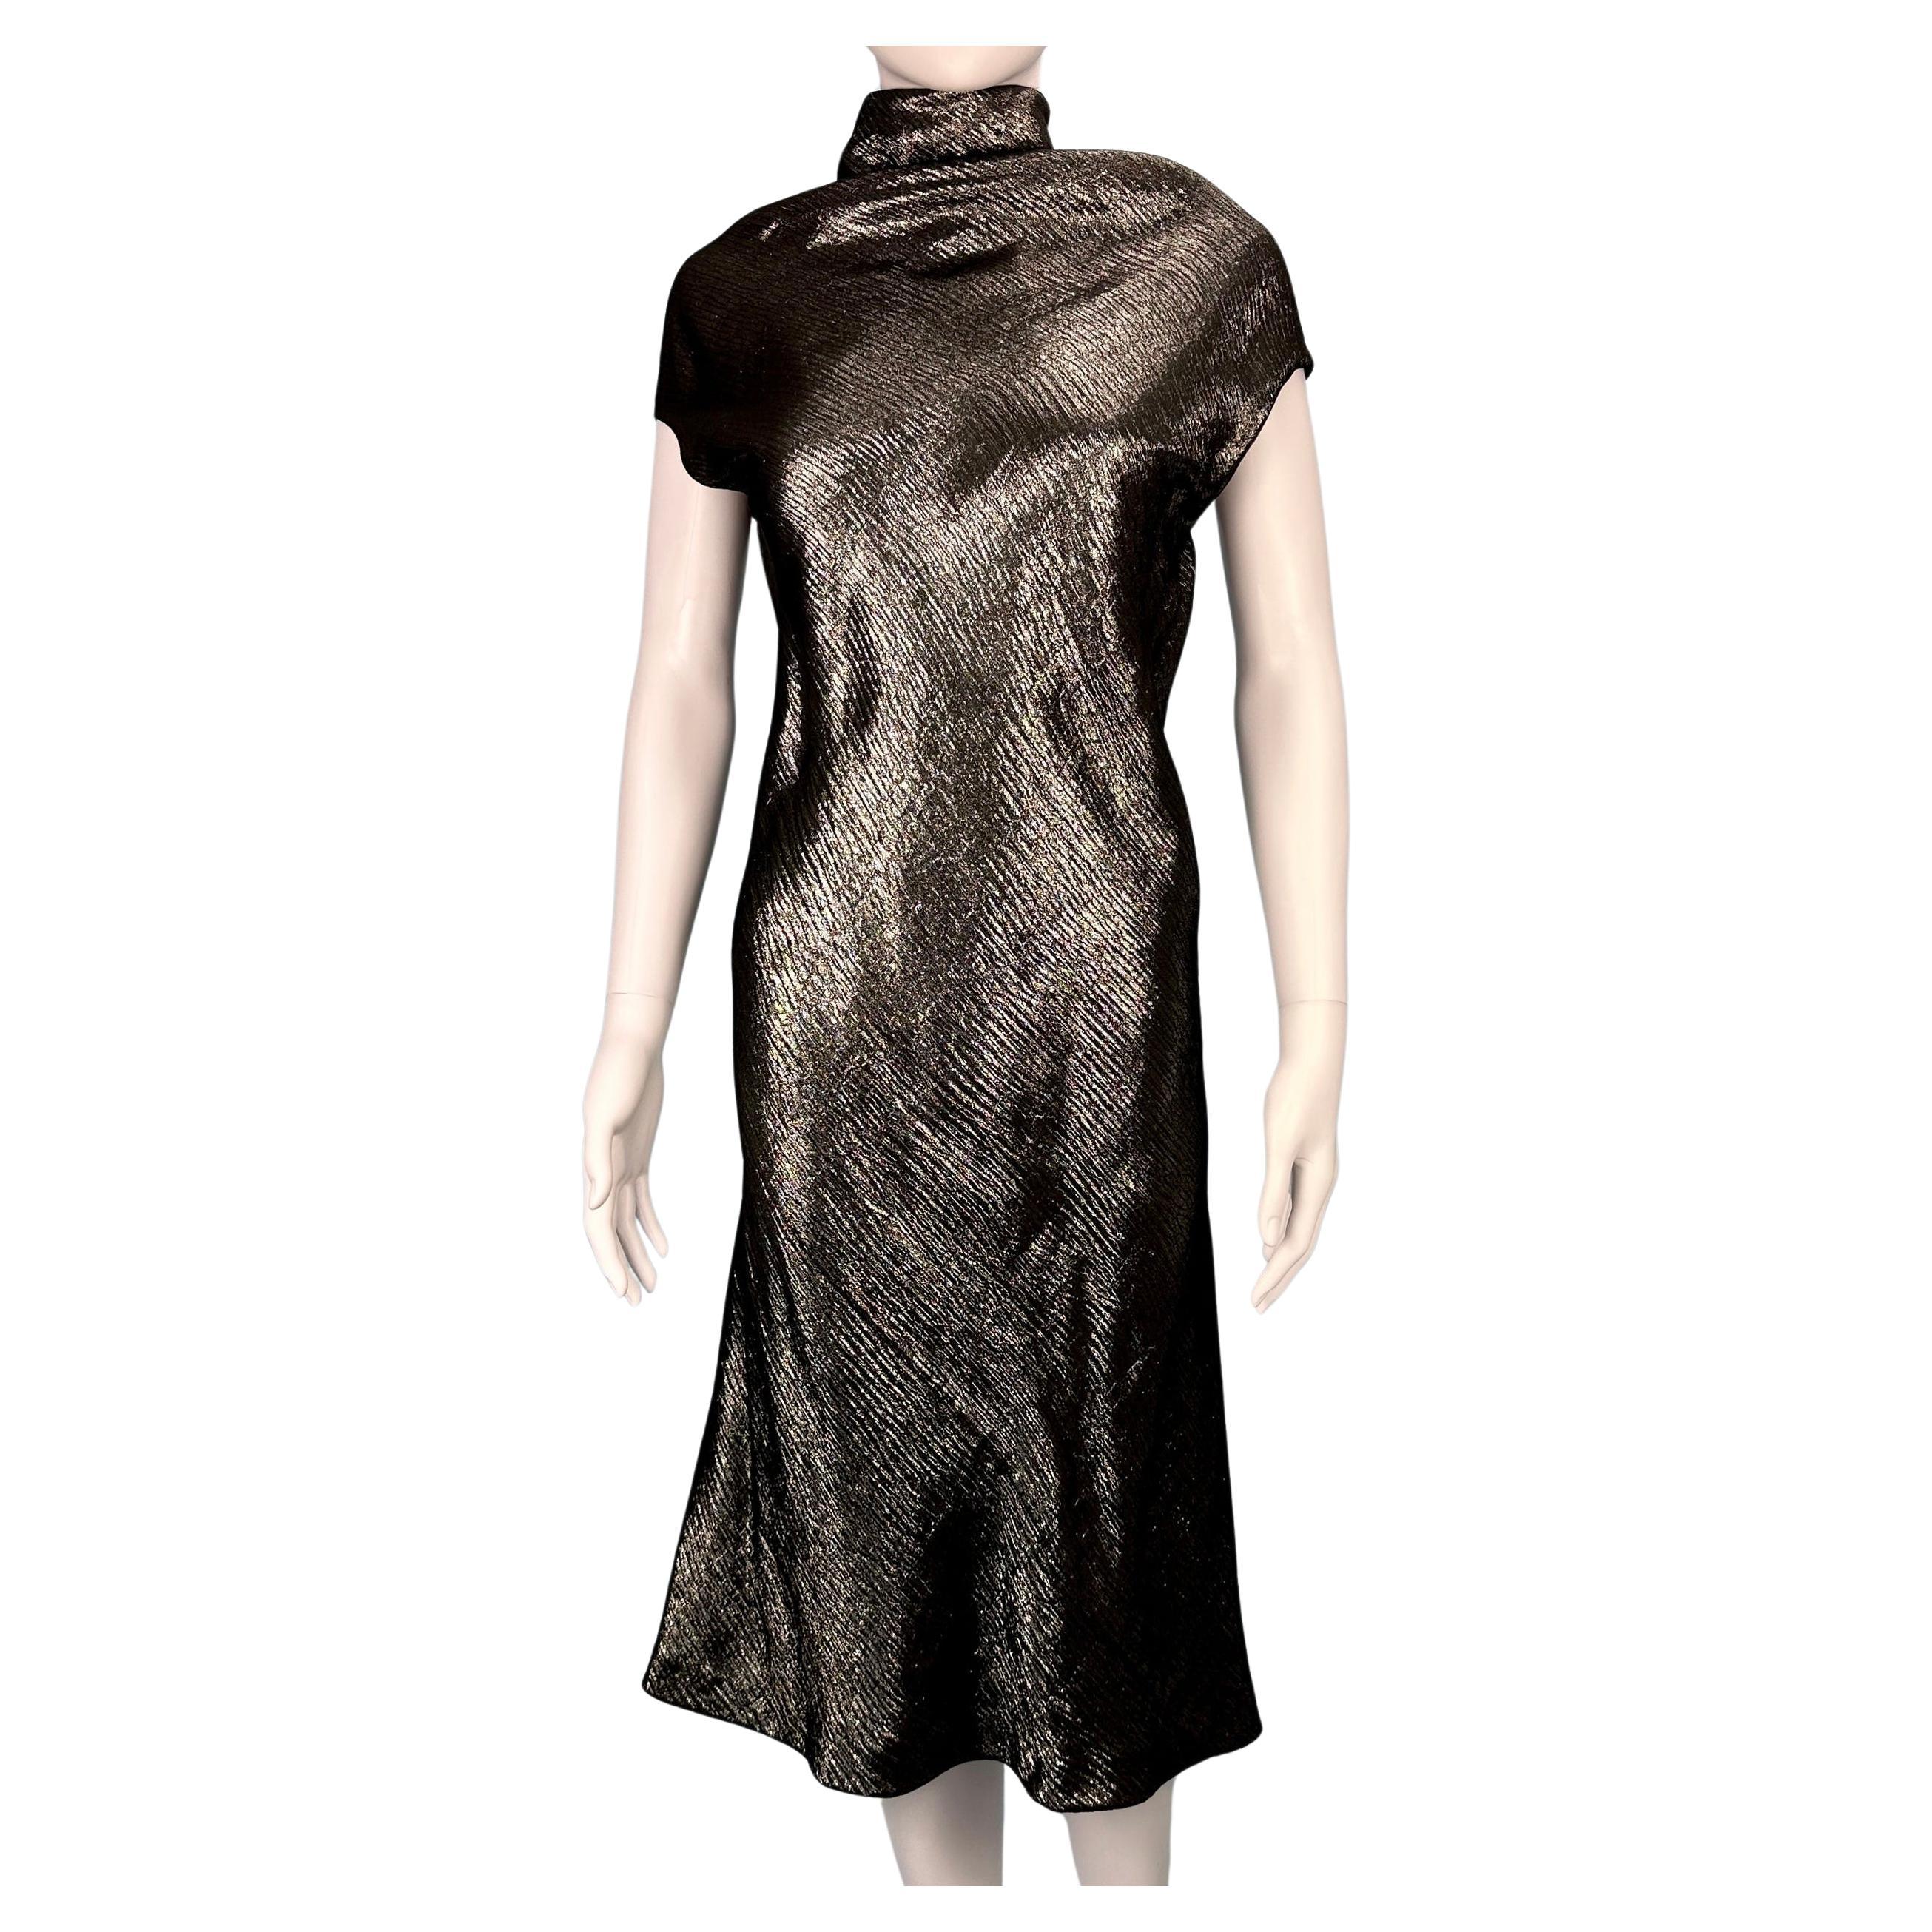 Hermes by Jean Paul Gaultier Fall 2007 Metallic Dress (Robe métallique) en vente